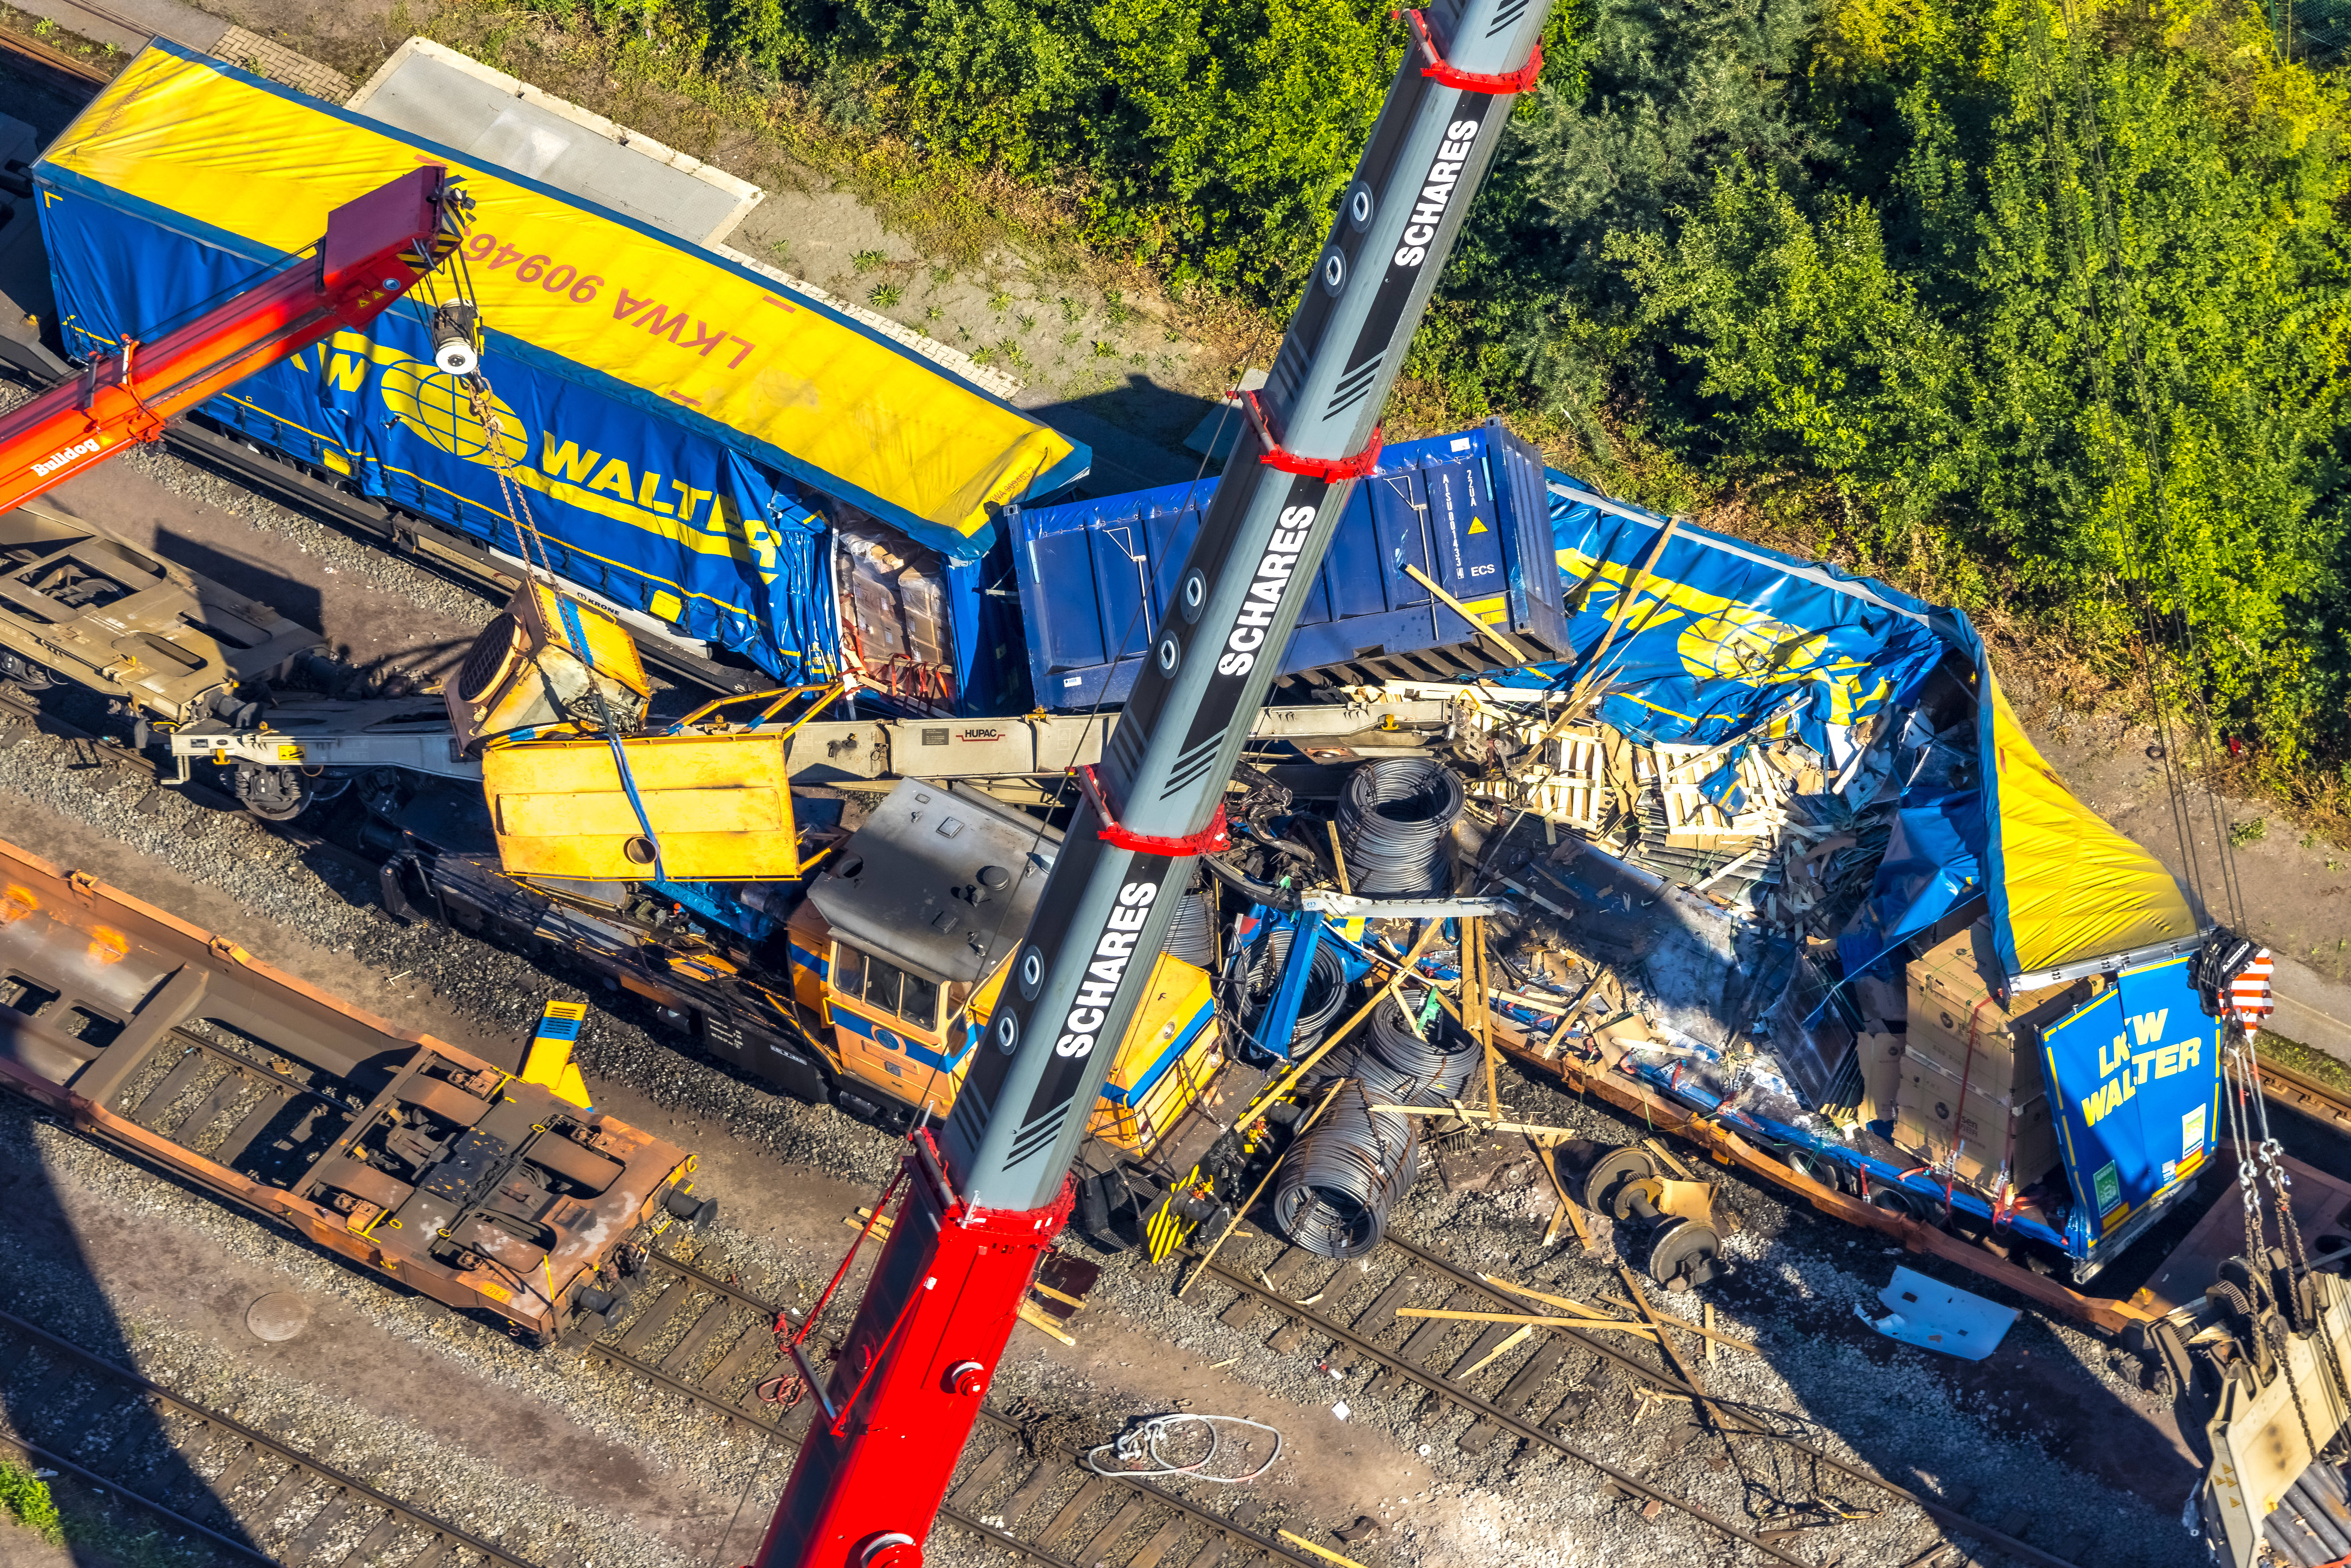 Güterzug kollidiert mit Bahn und entgleist! Schweres Zugunglück in NRW - Polizeihubschrauber im Einsatz